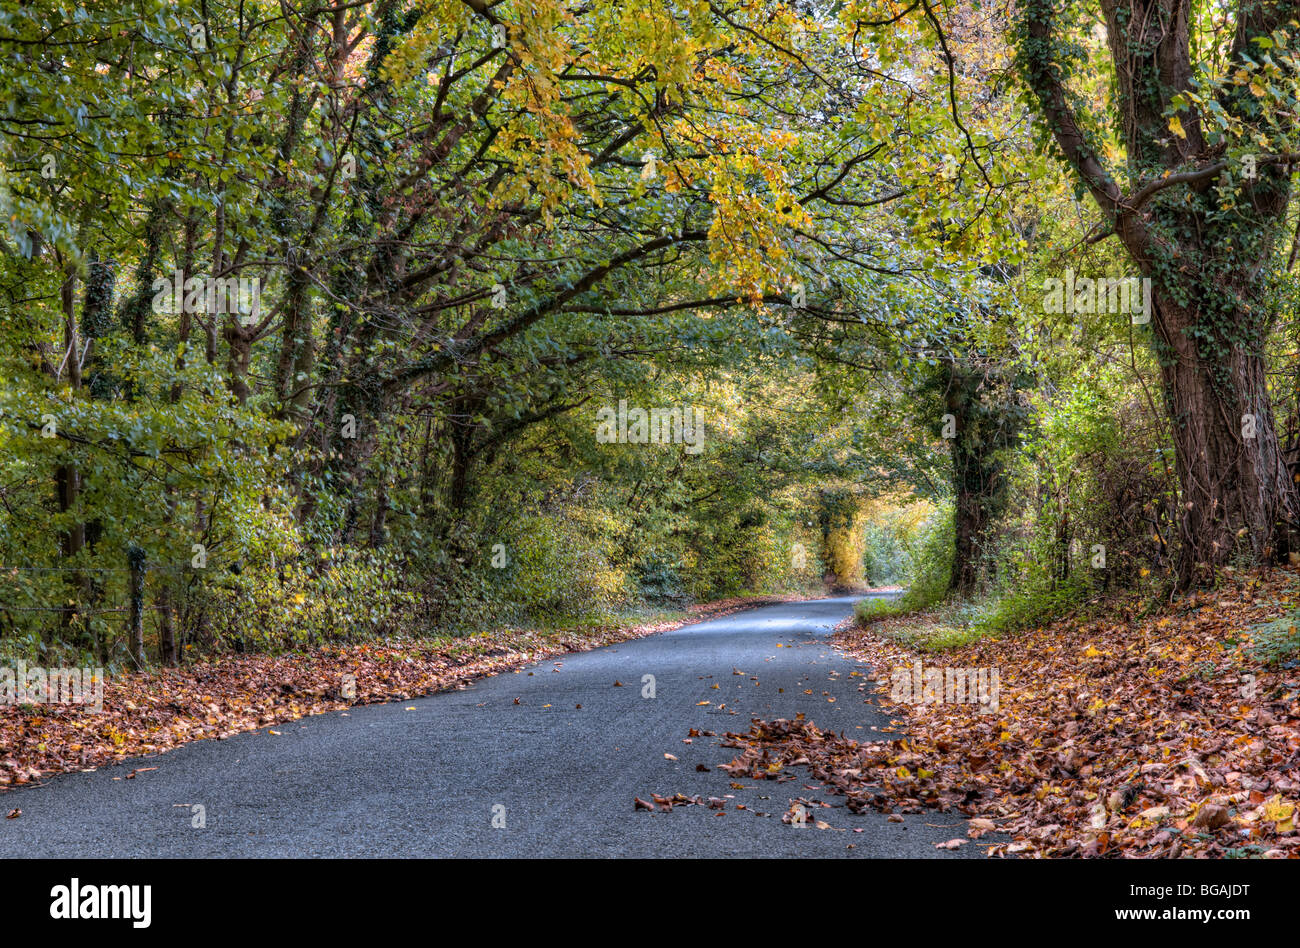 Schöne Herbstfärbung, von Bäumen gesäumten Gasse in der Nähe von Castle Combe Dorf wo Ästen überwuchert haben, in form eines Tunnels getroffen Stockfoto